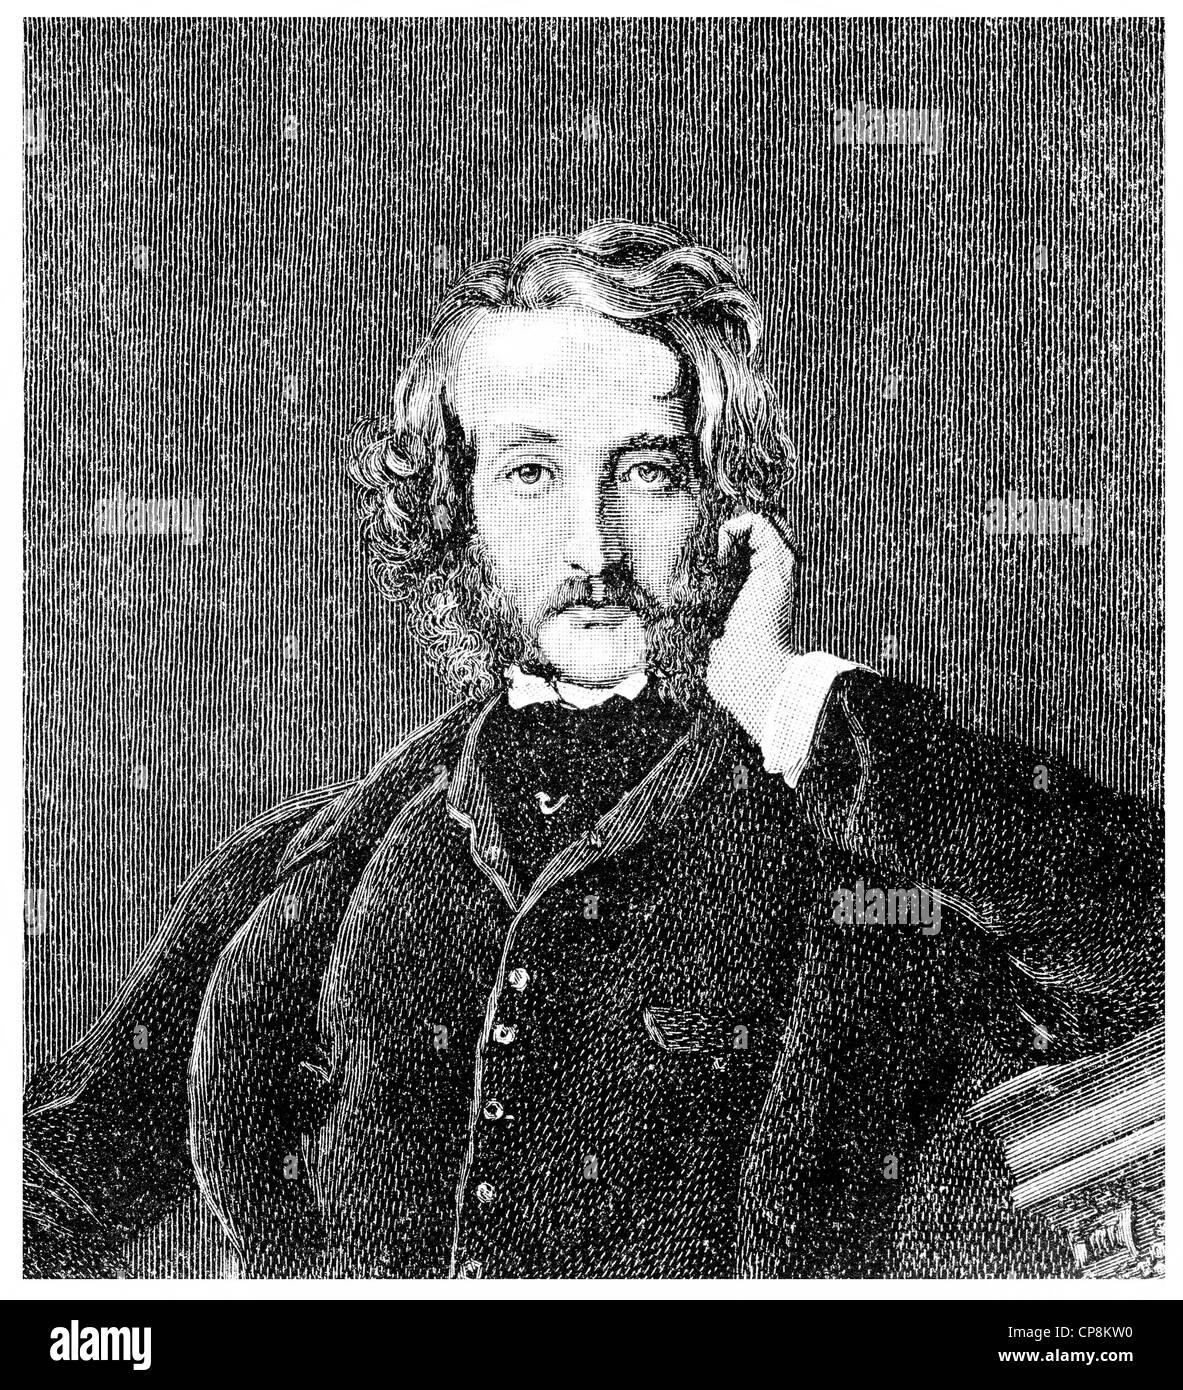 Edward George Earle Lytton Bulwer-Lytton, 1803 - 1873, un politico inglese, poeta e drammaturgo, Historische Zeichnung aus dem Foto Stock